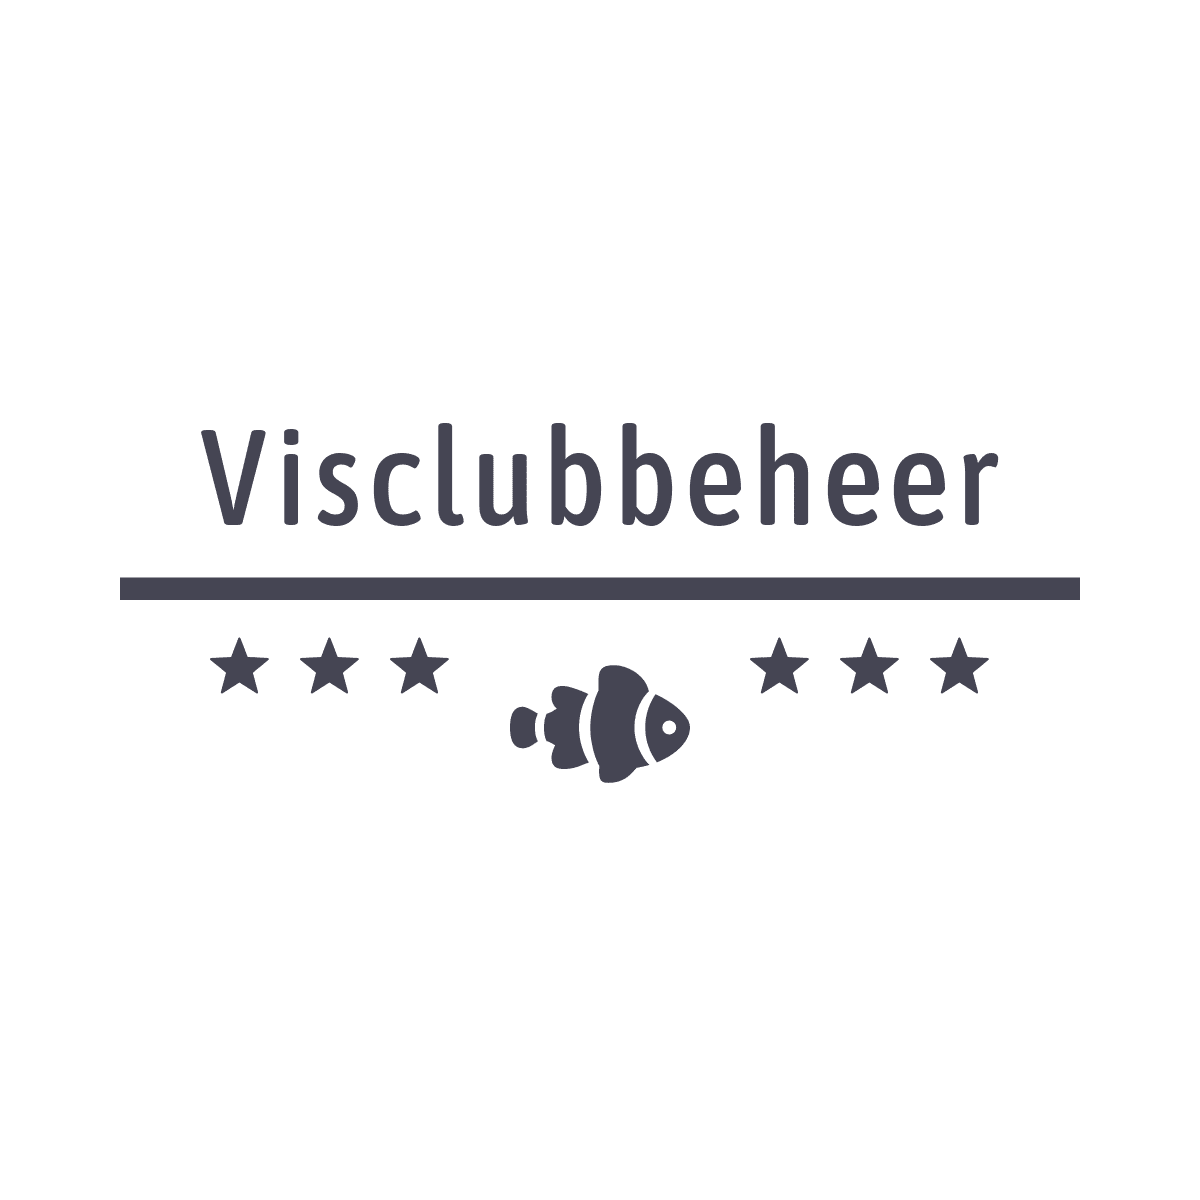 Visclubbeheer België en Nederland - hengelsportverenigingen voor visclubs